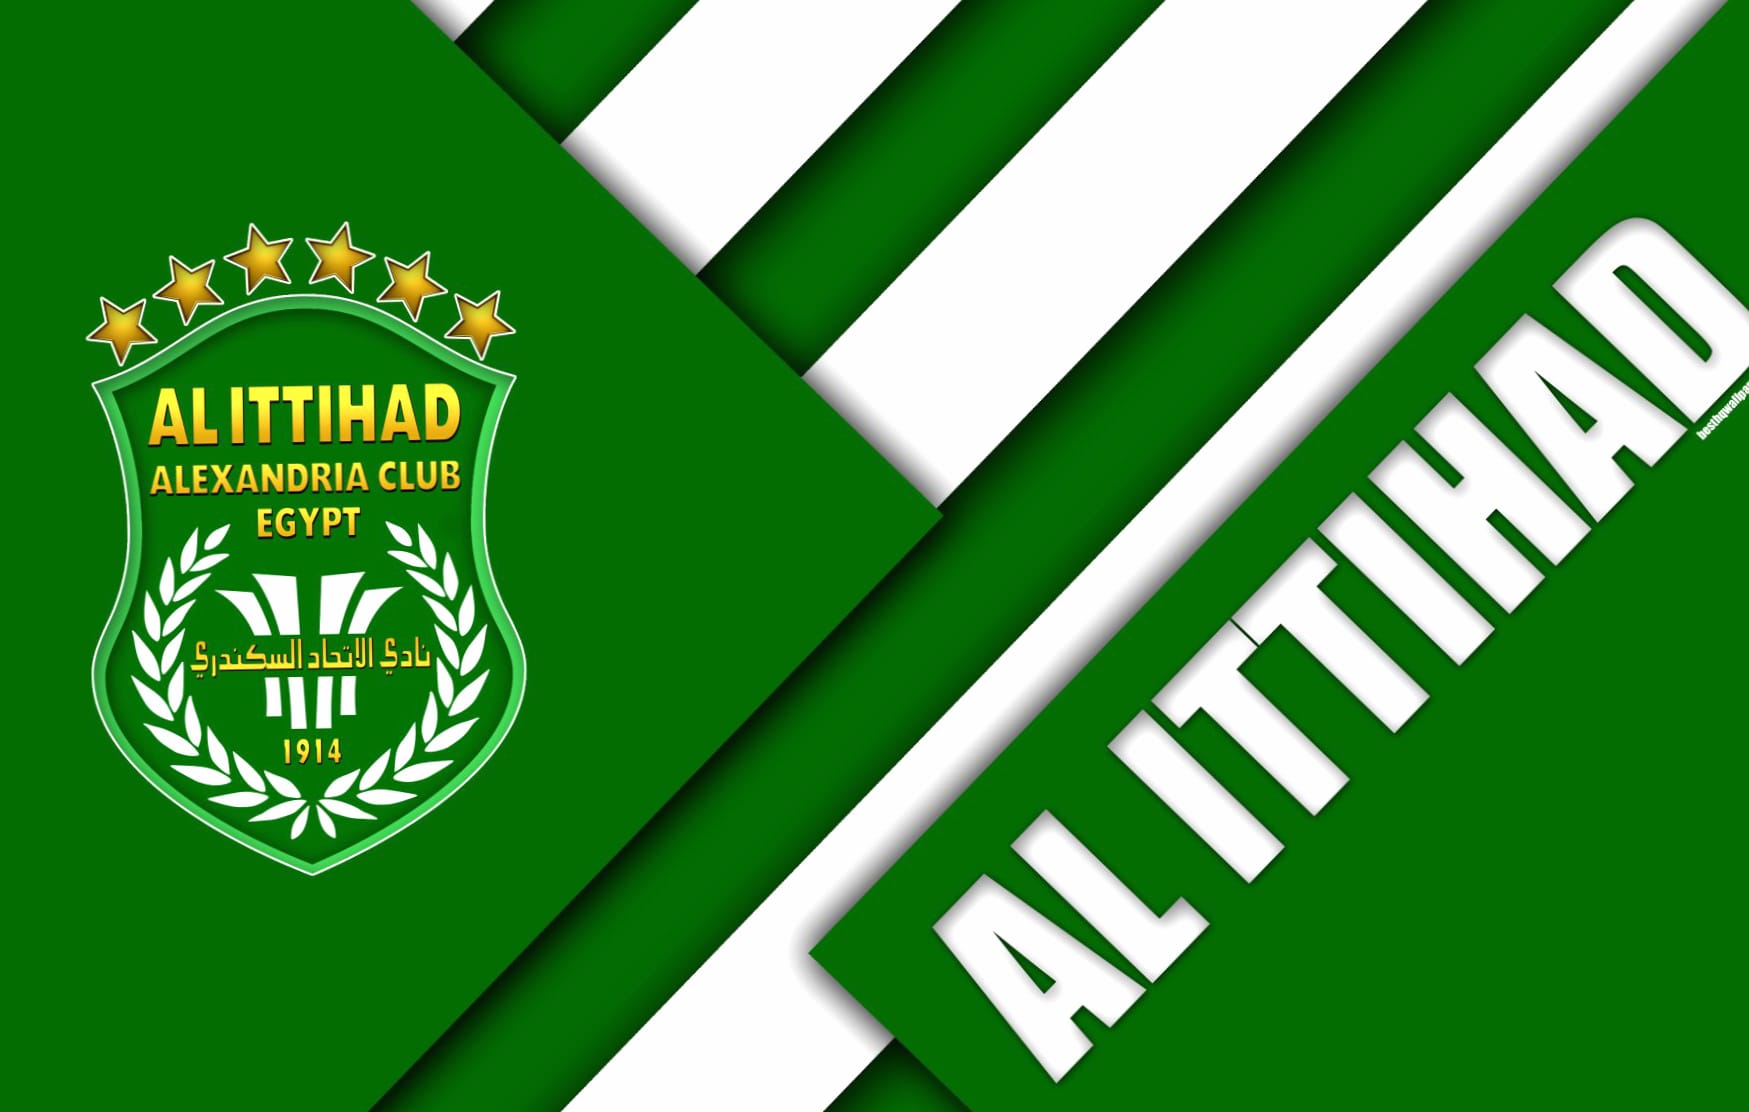 Al Ittihad Alexandria Club at 1024 x 768 size wallpapers HD quality